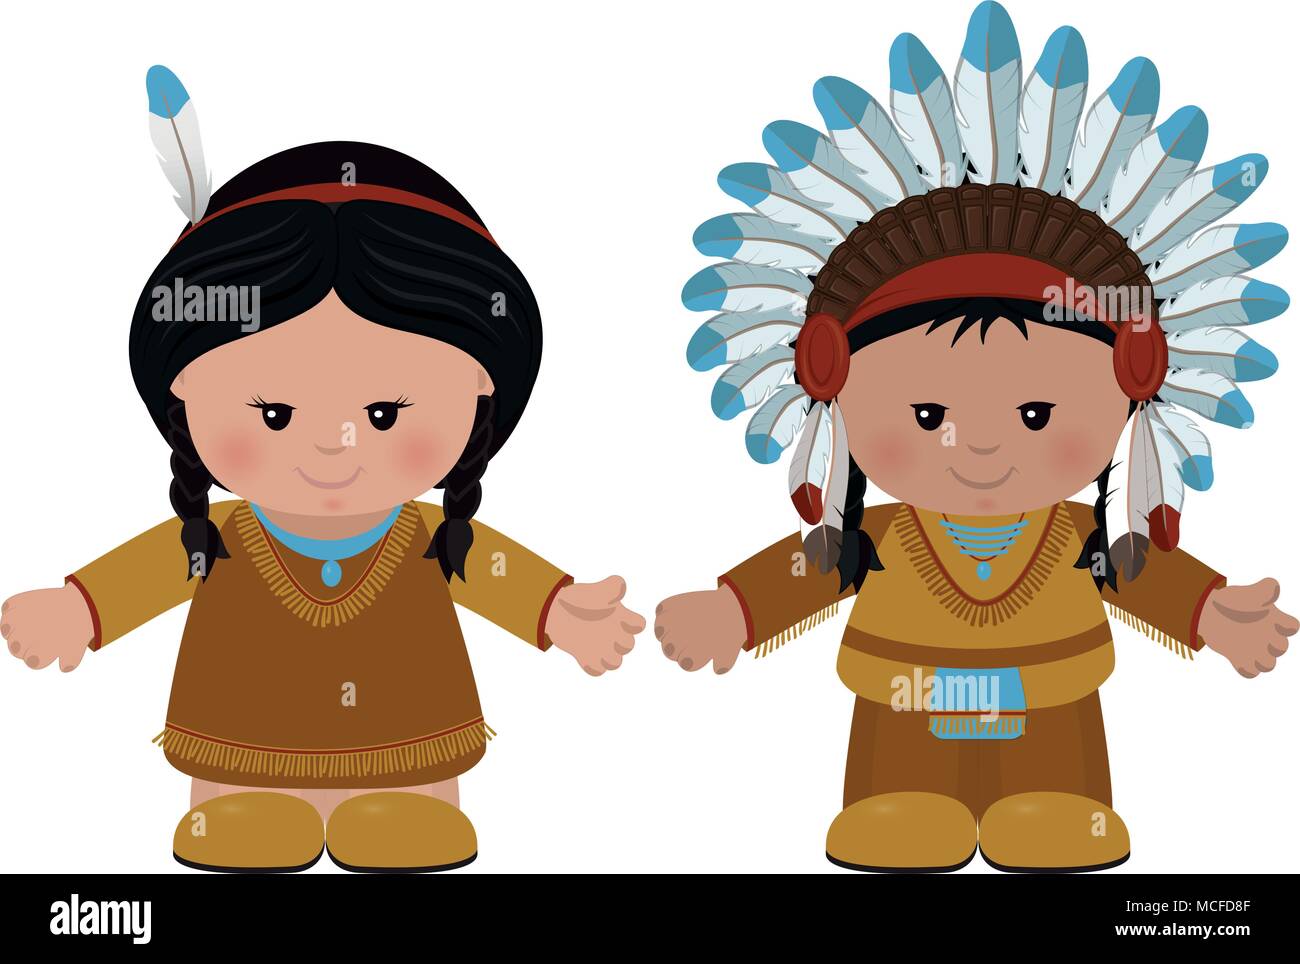 Zeichentrickfiguren der Indianer, der Mann und die Frau in der Tracht. Vector Illustration Stock Vektor